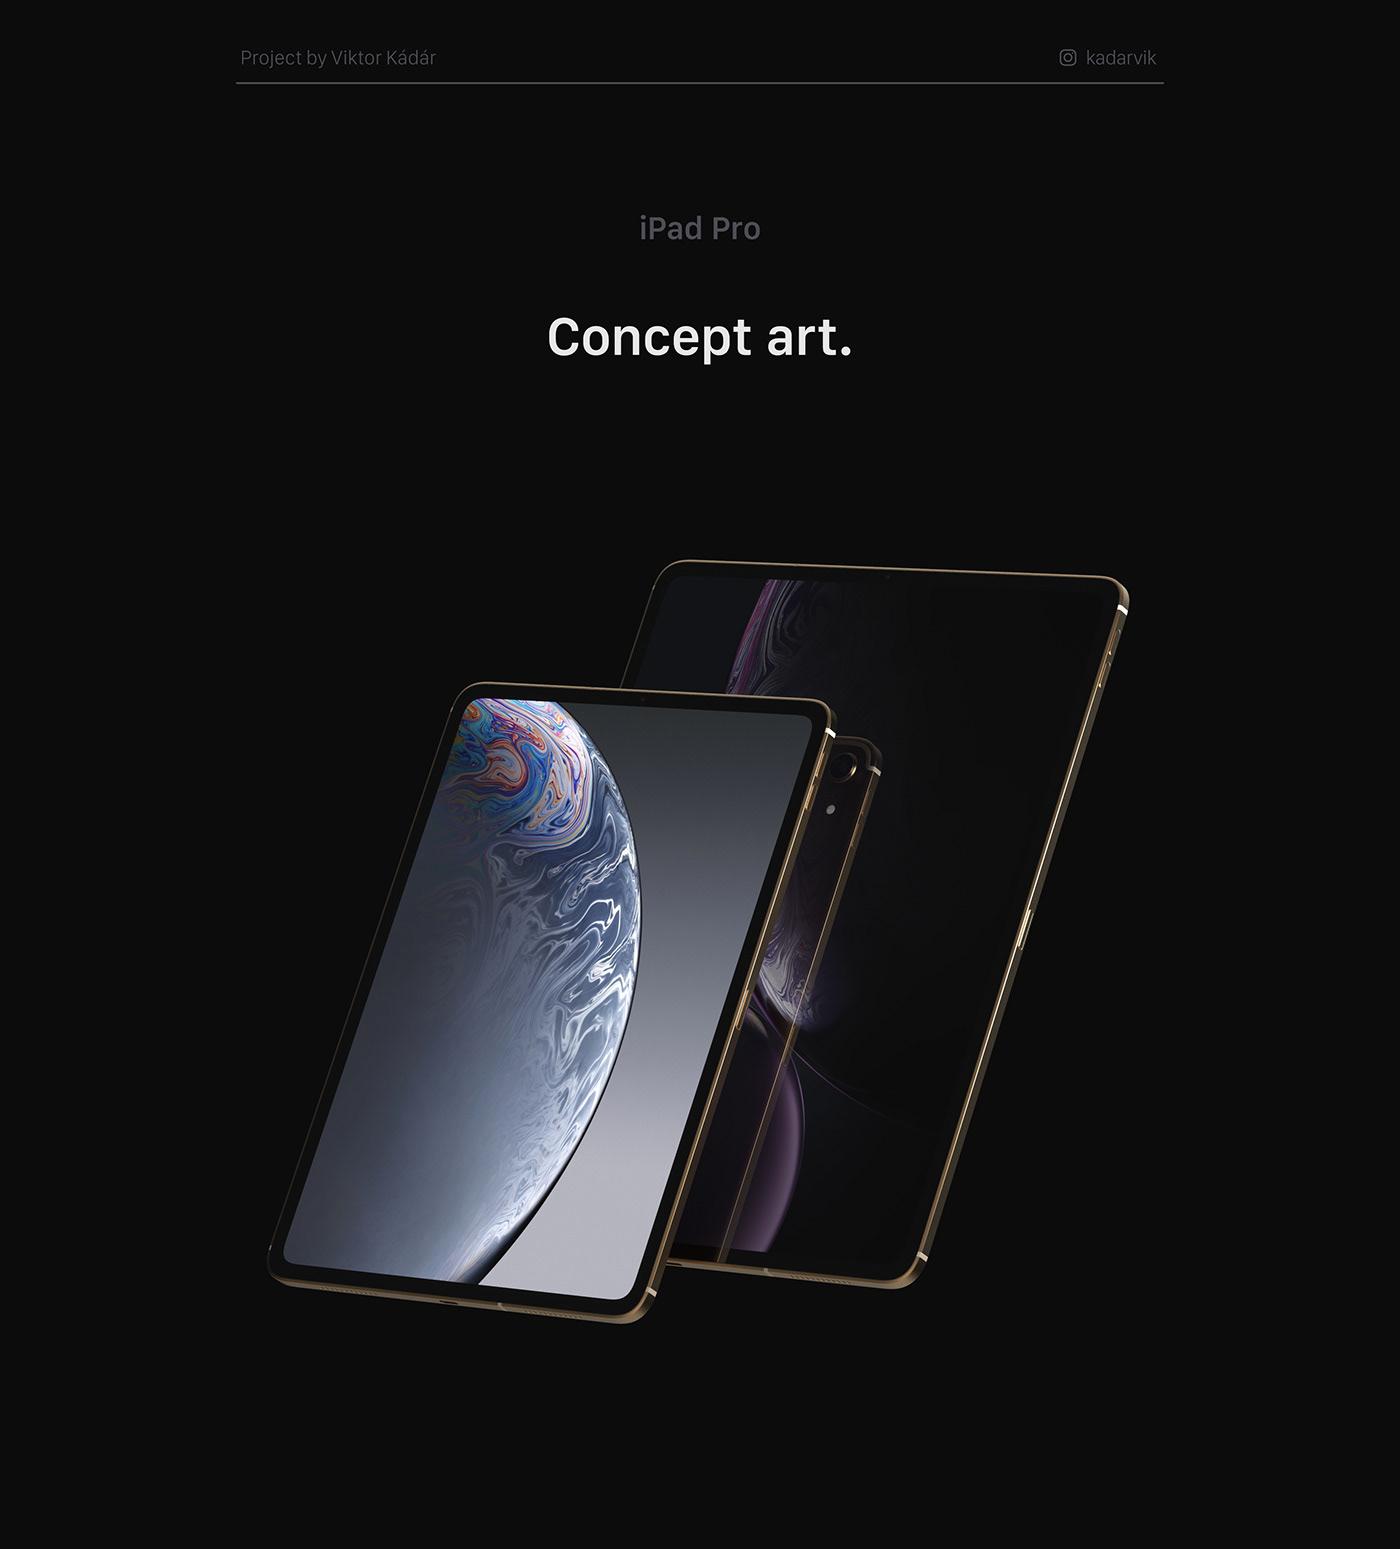 ภาพคอนเซ็ปต์ iPad Pro 2018